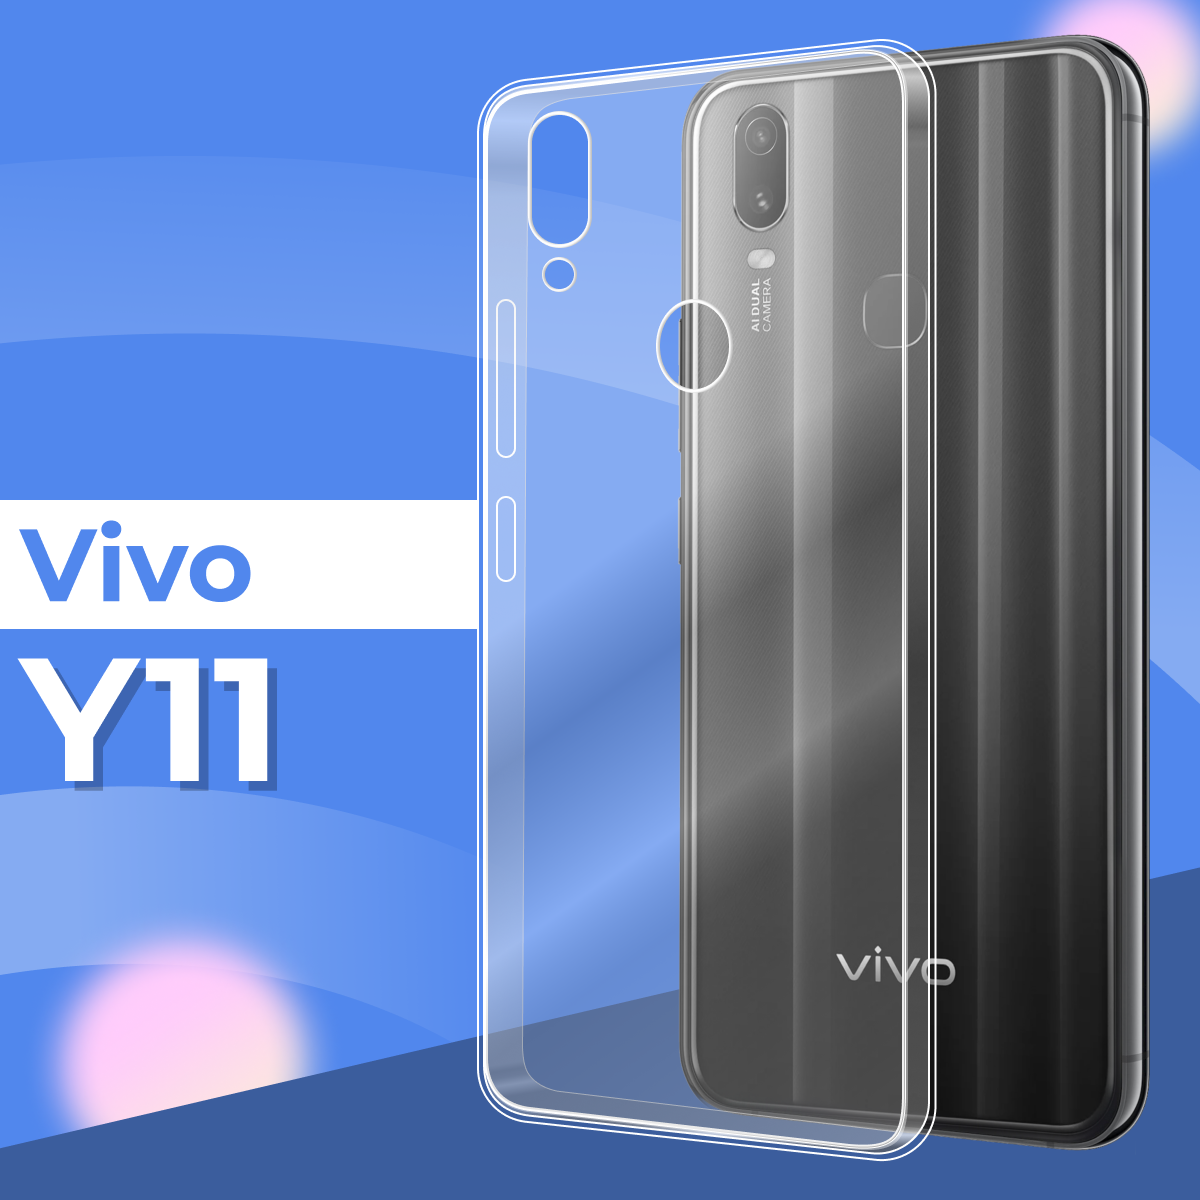 Ультратонкий силиконовый чехол для телефона Vivo Y11 / Прозрачный защитный чехол для Виво Ю11 / Premium силикон